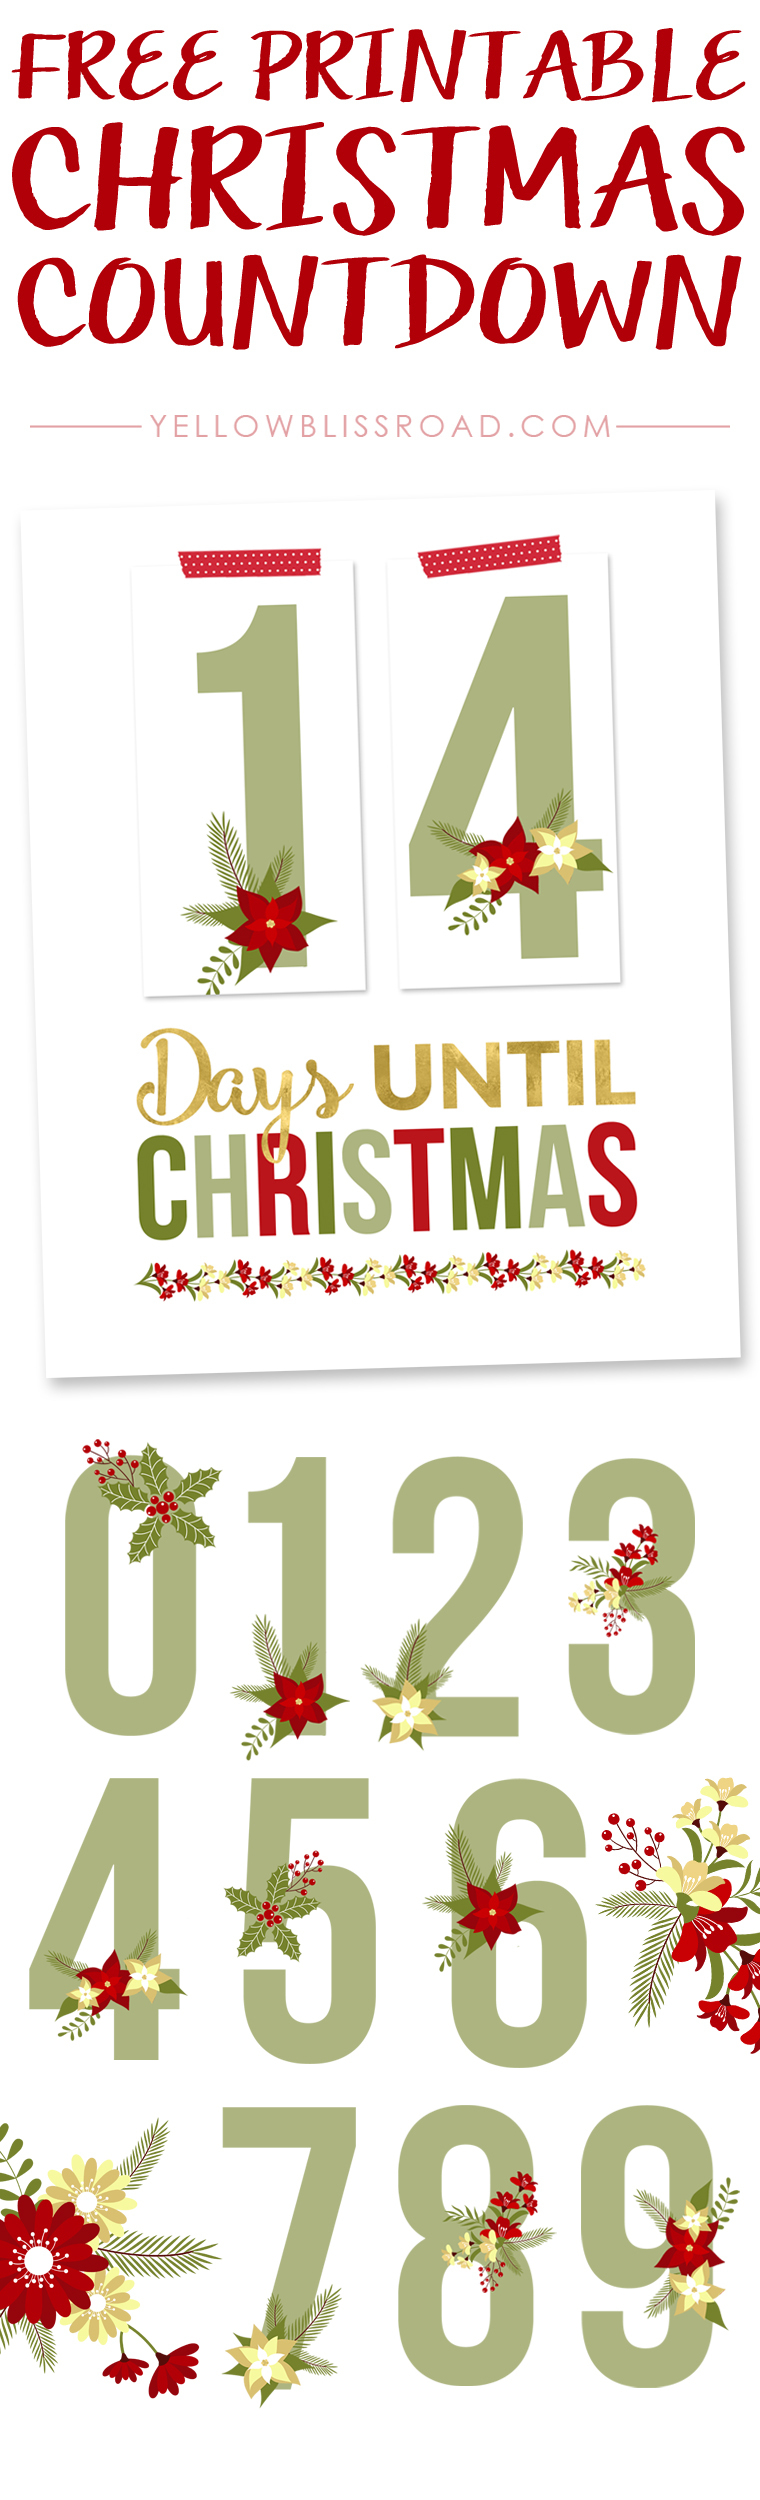 Free Printable Christmas Countdown - Yellow Bliss Road - Christmas Countdown Free Printable